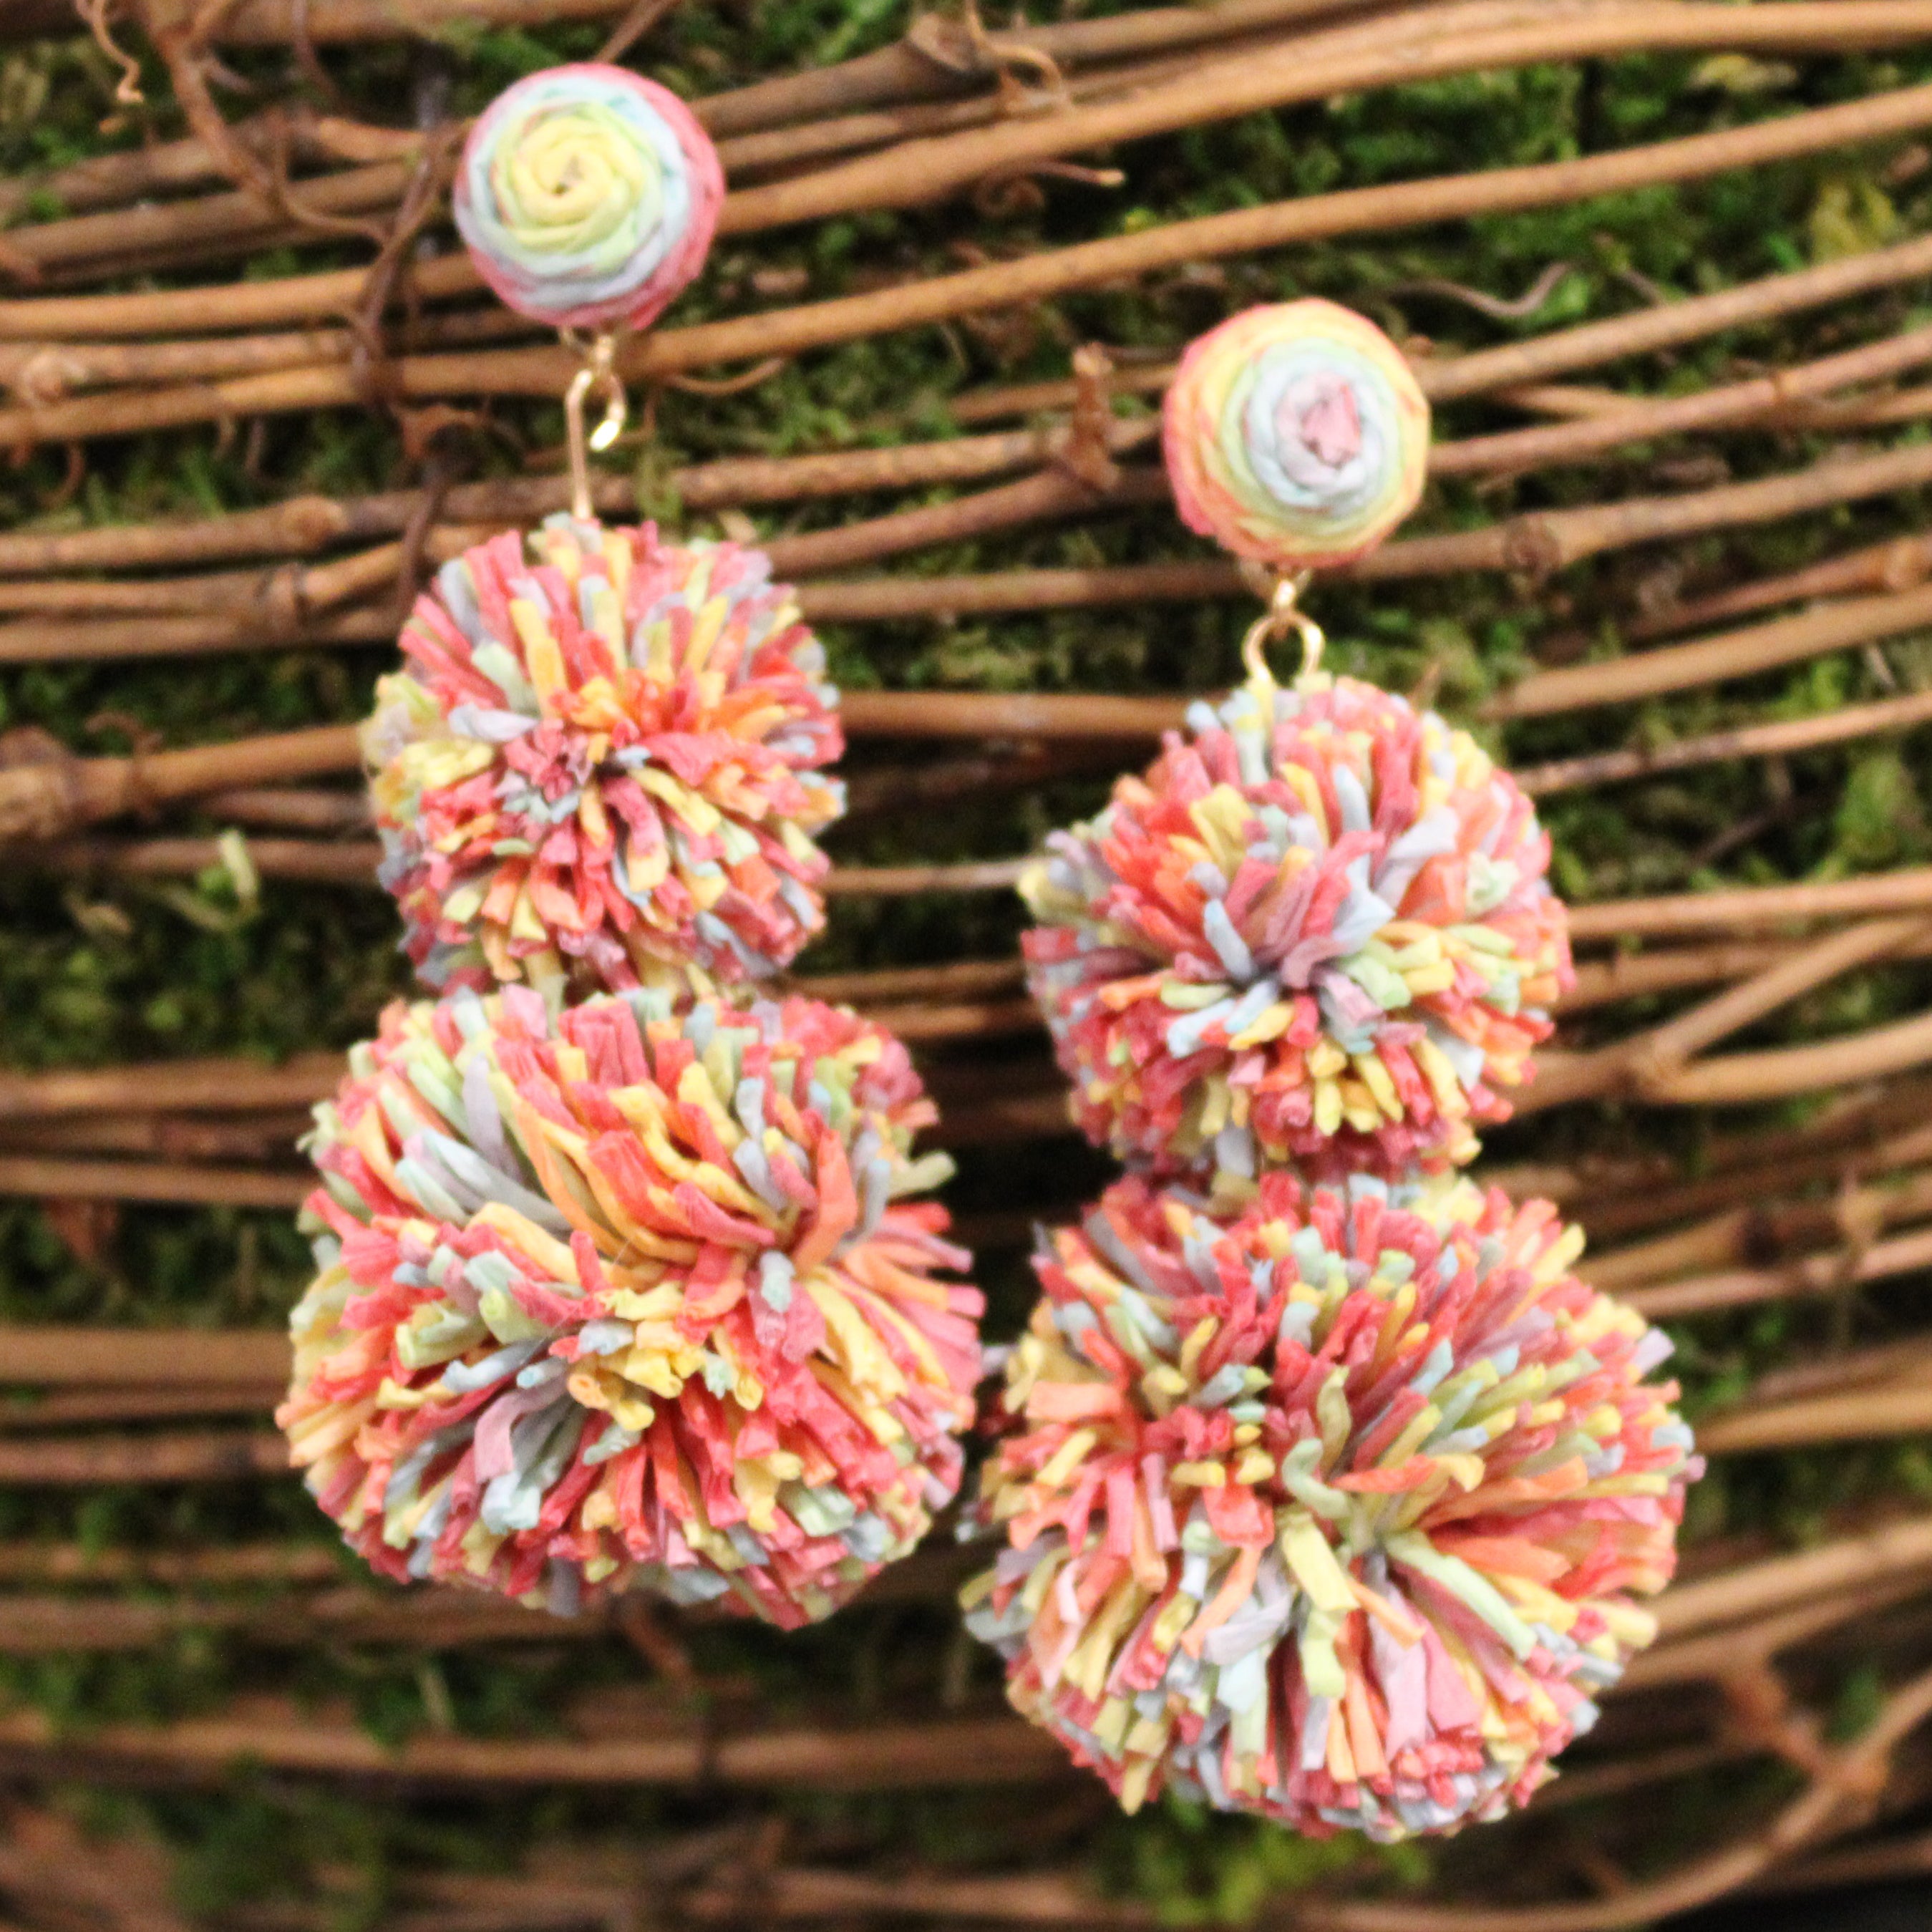 Raffia Ball Drop Earrings (Multicolor)